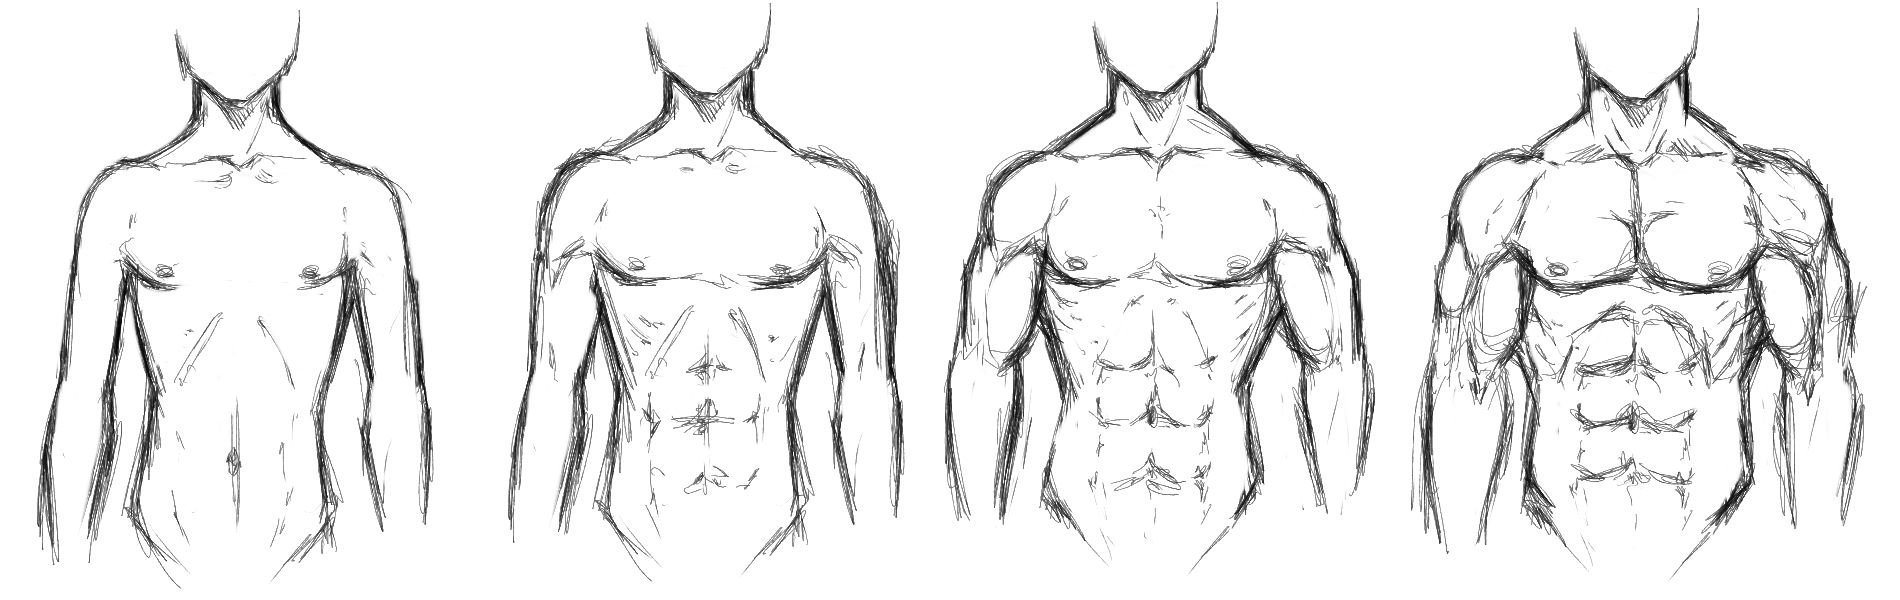 Поэтапное рисование мужского тела